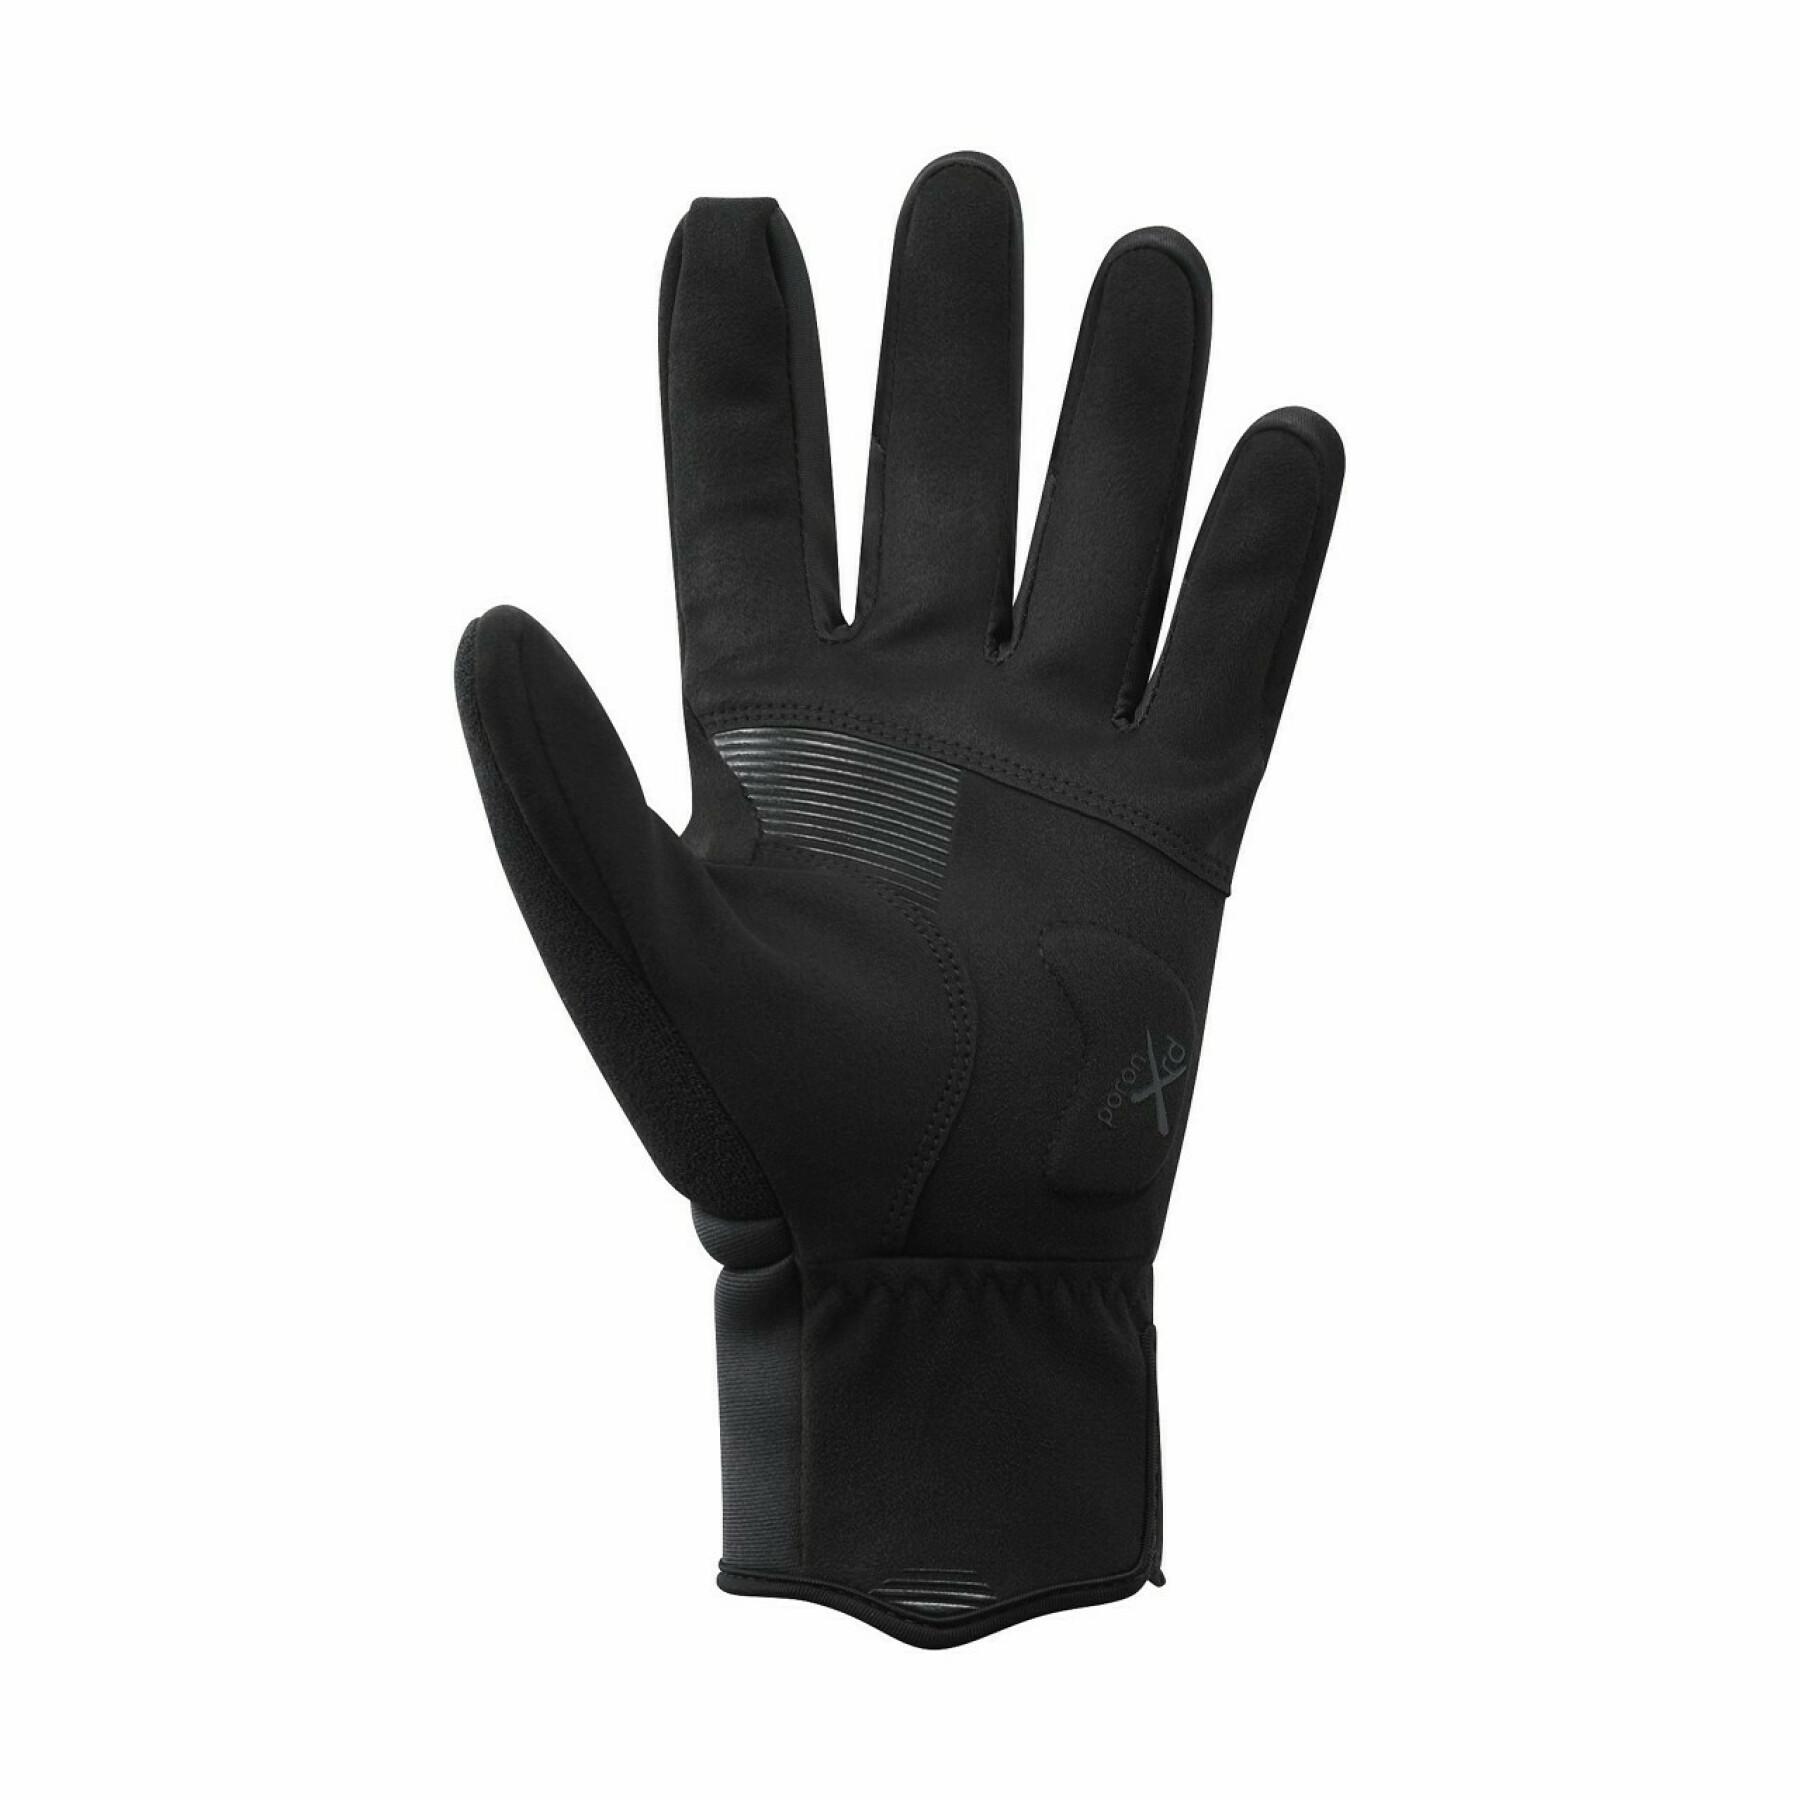 Thermal gloves Shimano windbreak